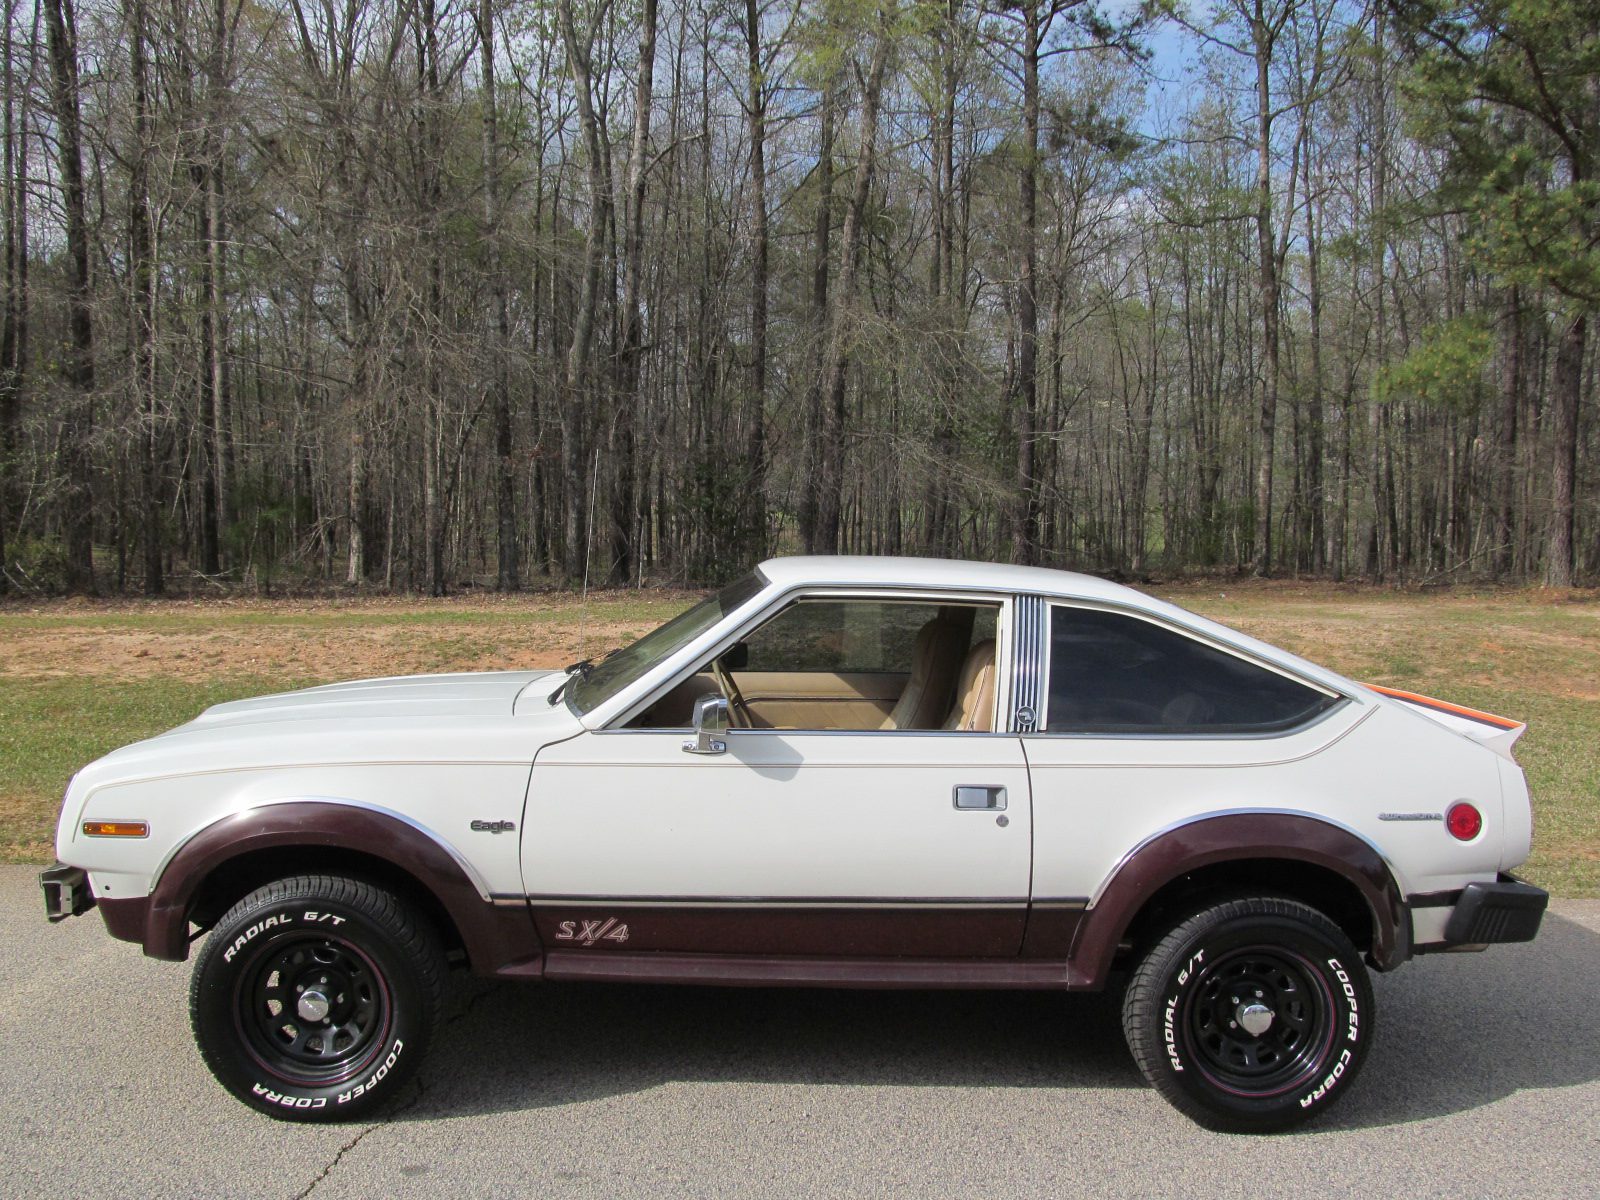 1981 AMC Eagle SX4 | Peachtree Classic Cars